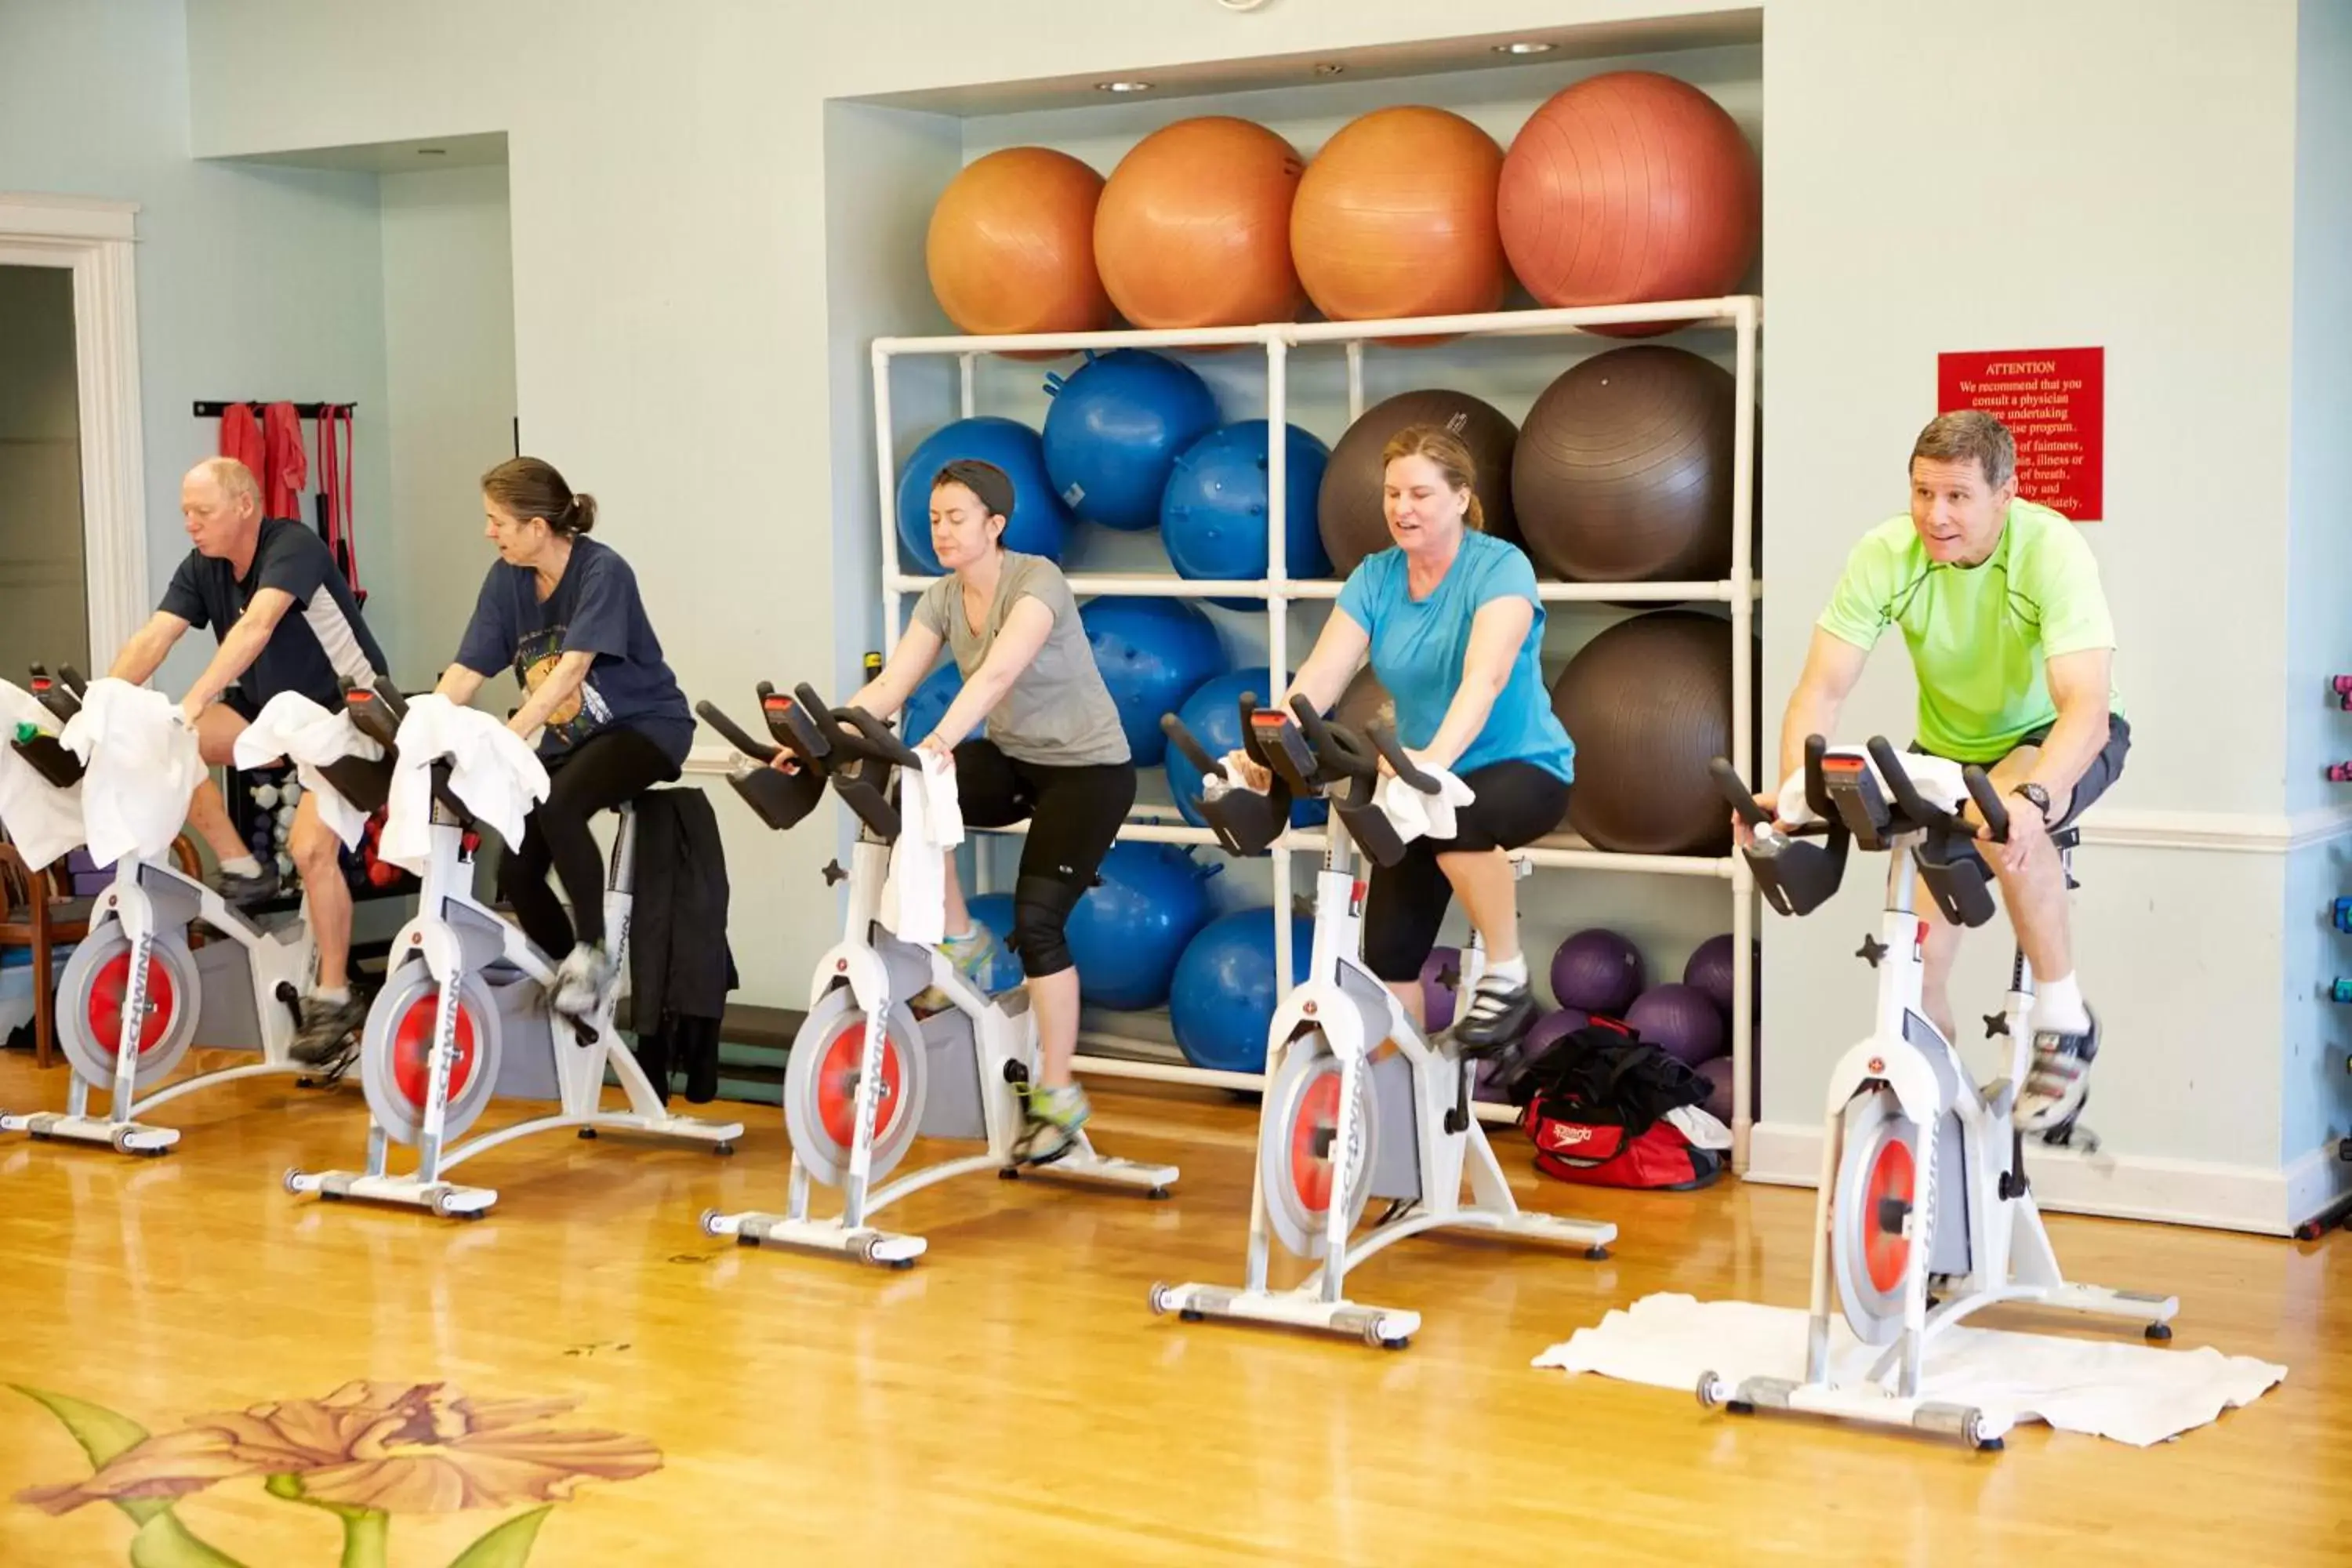 Fitness centre/facilities, Fitness Center/Facilities in Kingsmill Resort